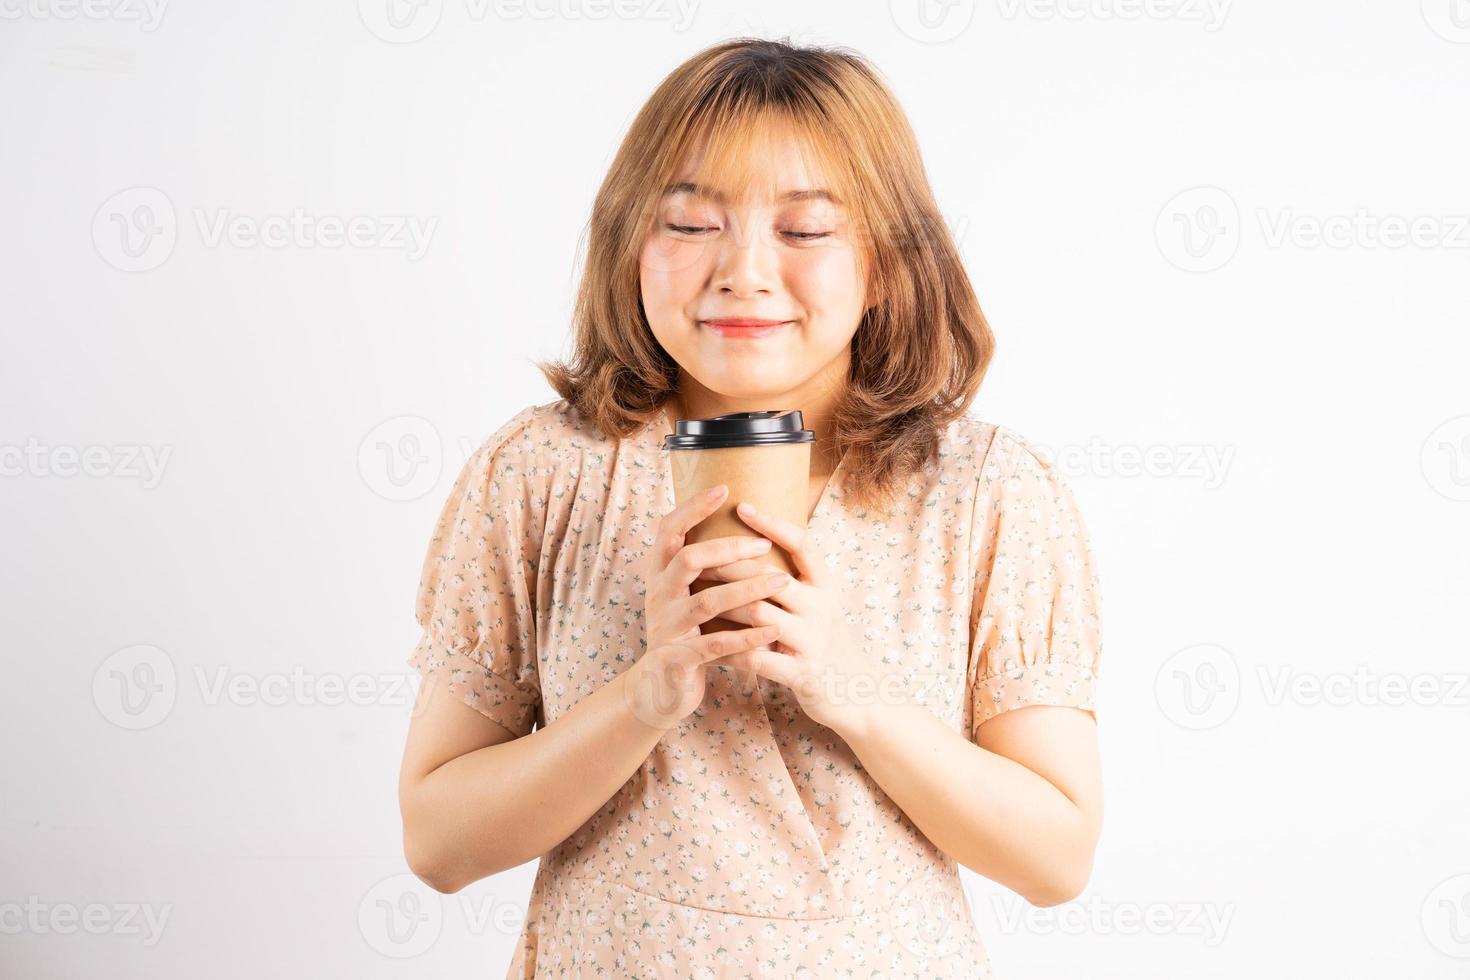 jong Aziatisch meisje met koffiekopje met uitdrukking op de achtergrond foto